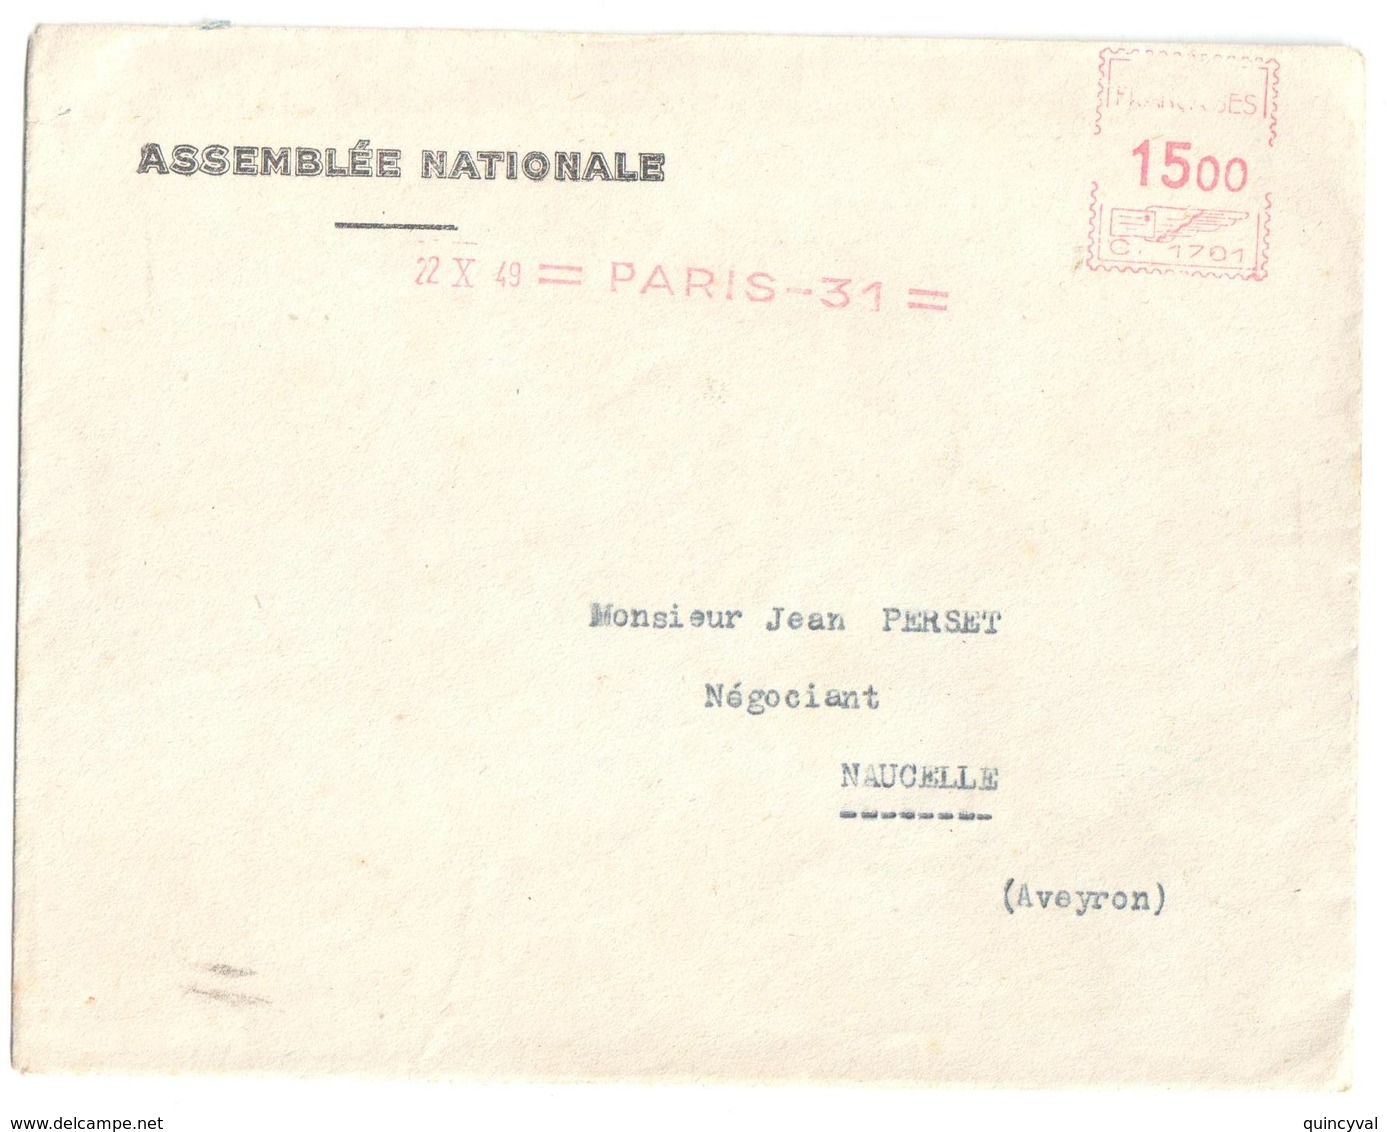 4563 ASSEMBLEE NATIONALE Lettre Entête 15 F Ob 1949 EMA Machine C Paris 31 Dest NACELLE Aveyron Courrier "amusant" - EMA (Print Machine)